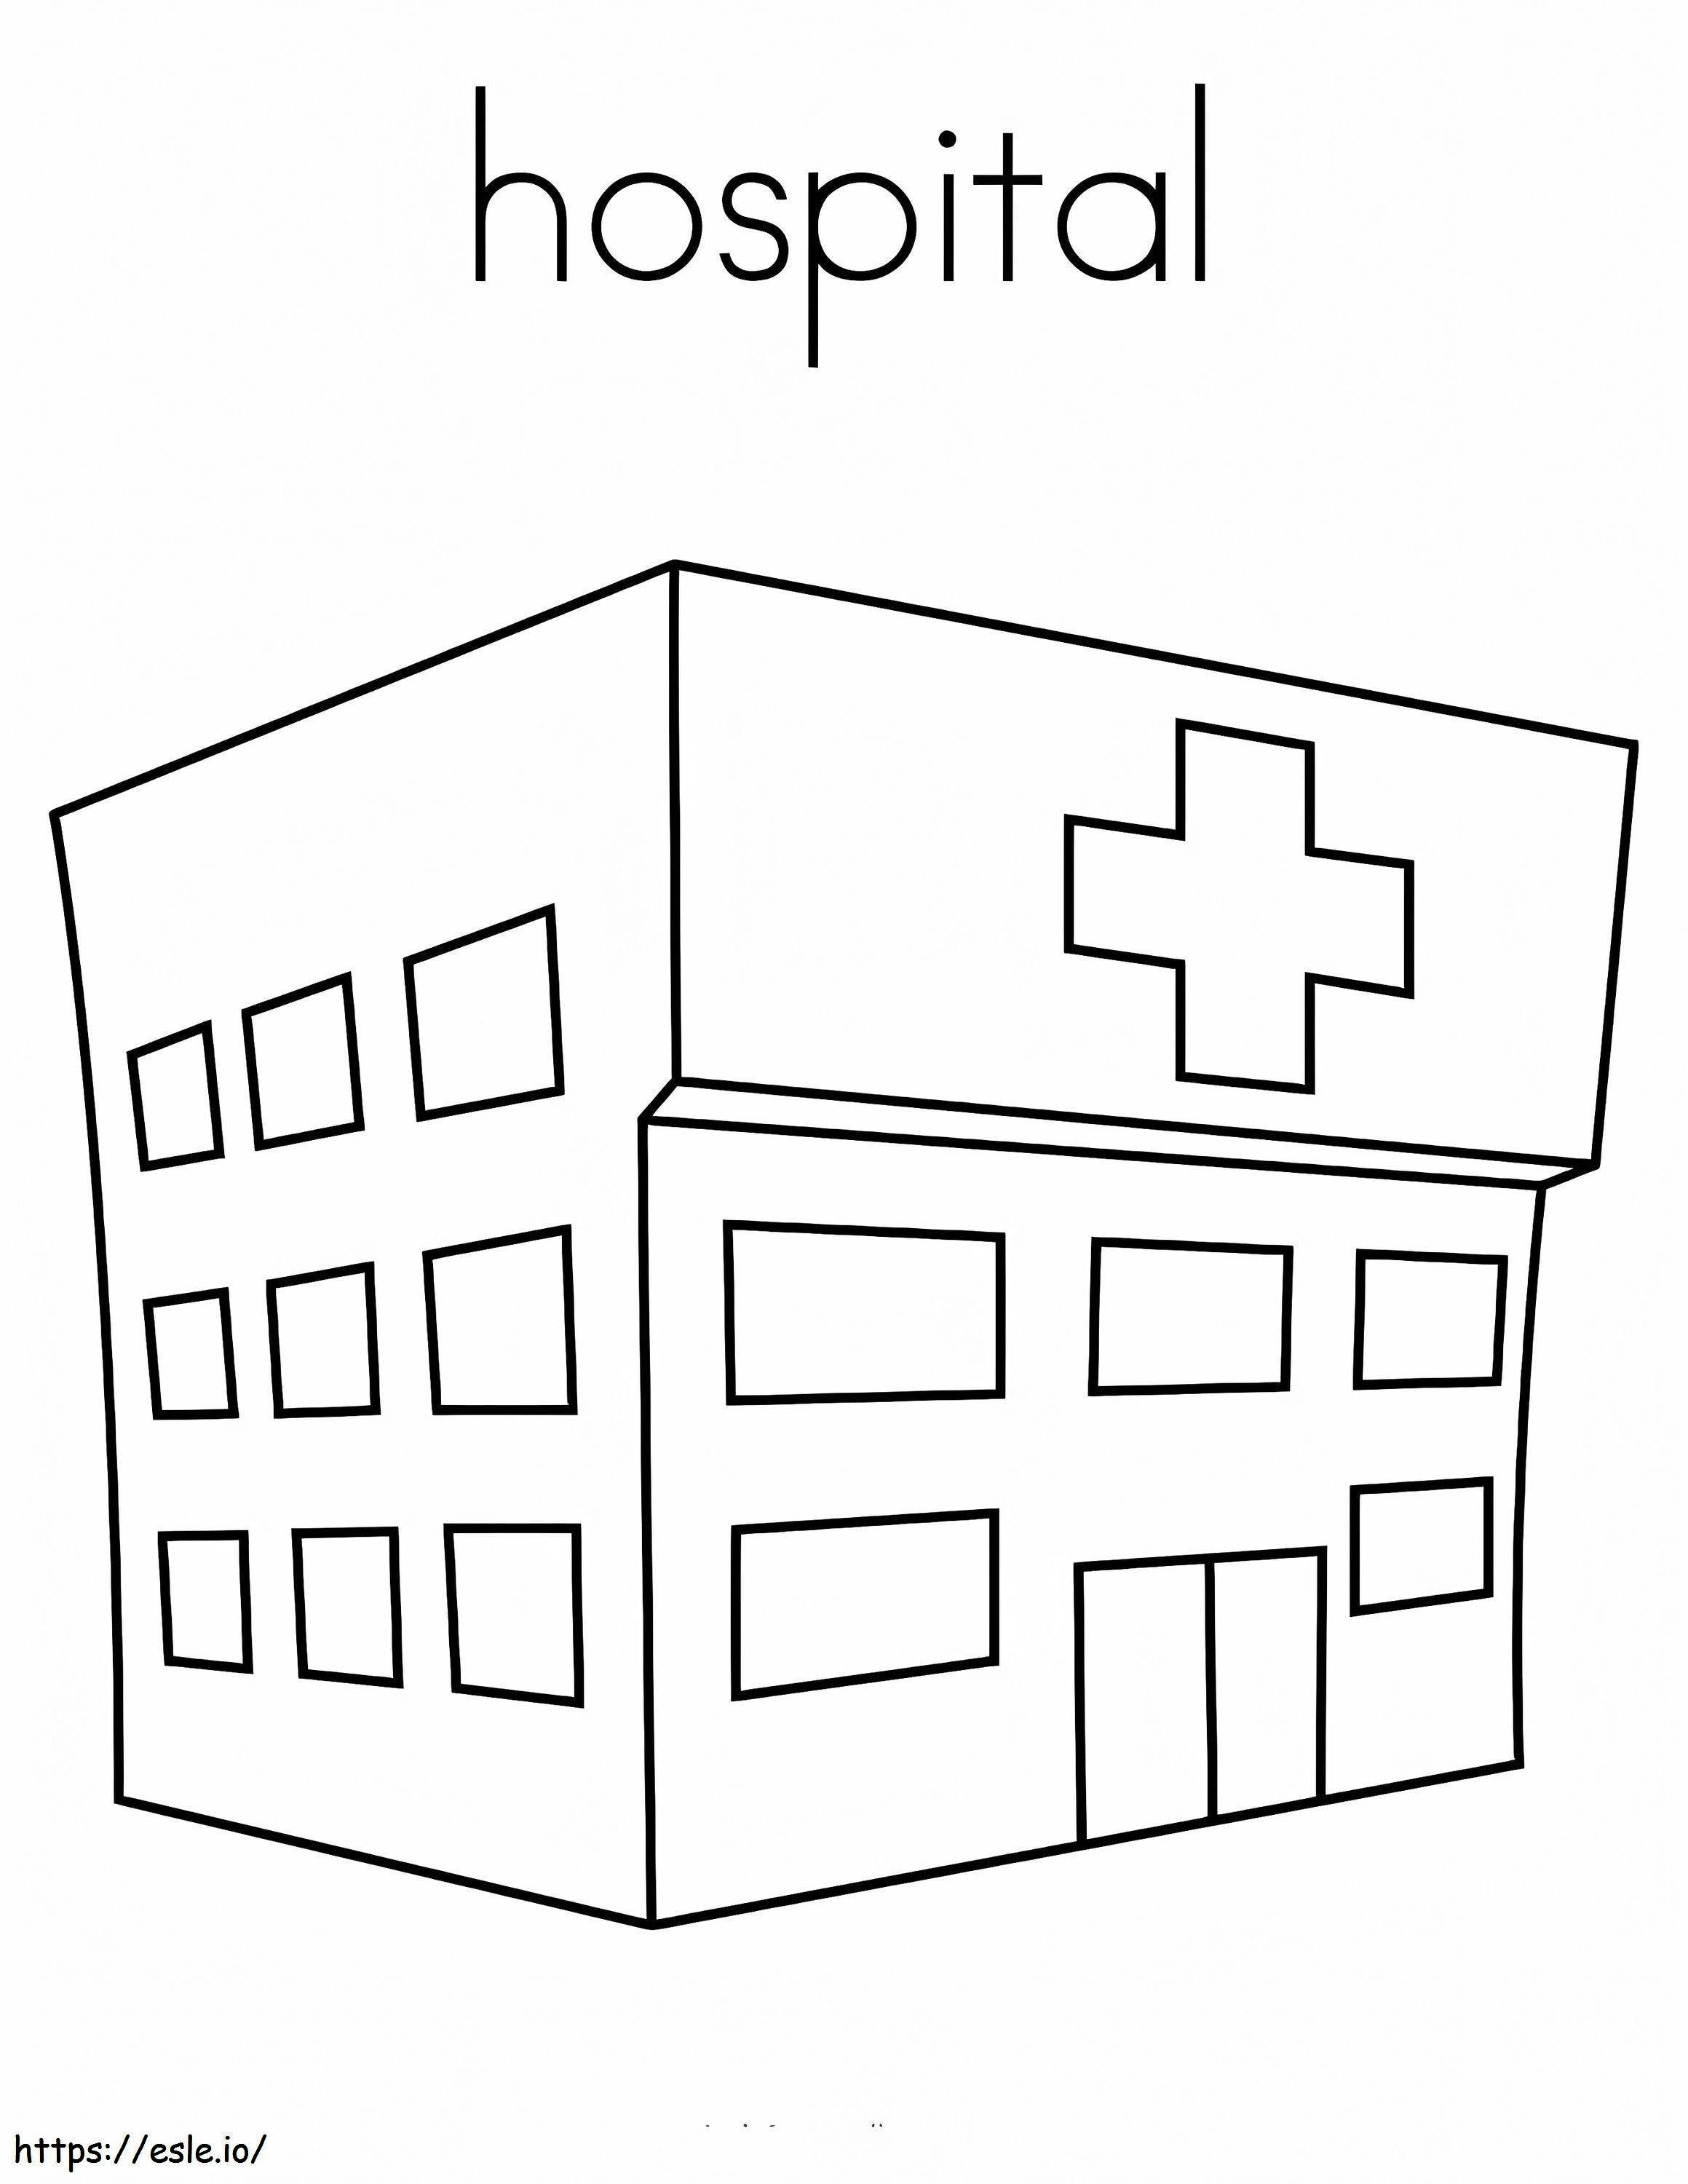 Ospedale semplice da colorare